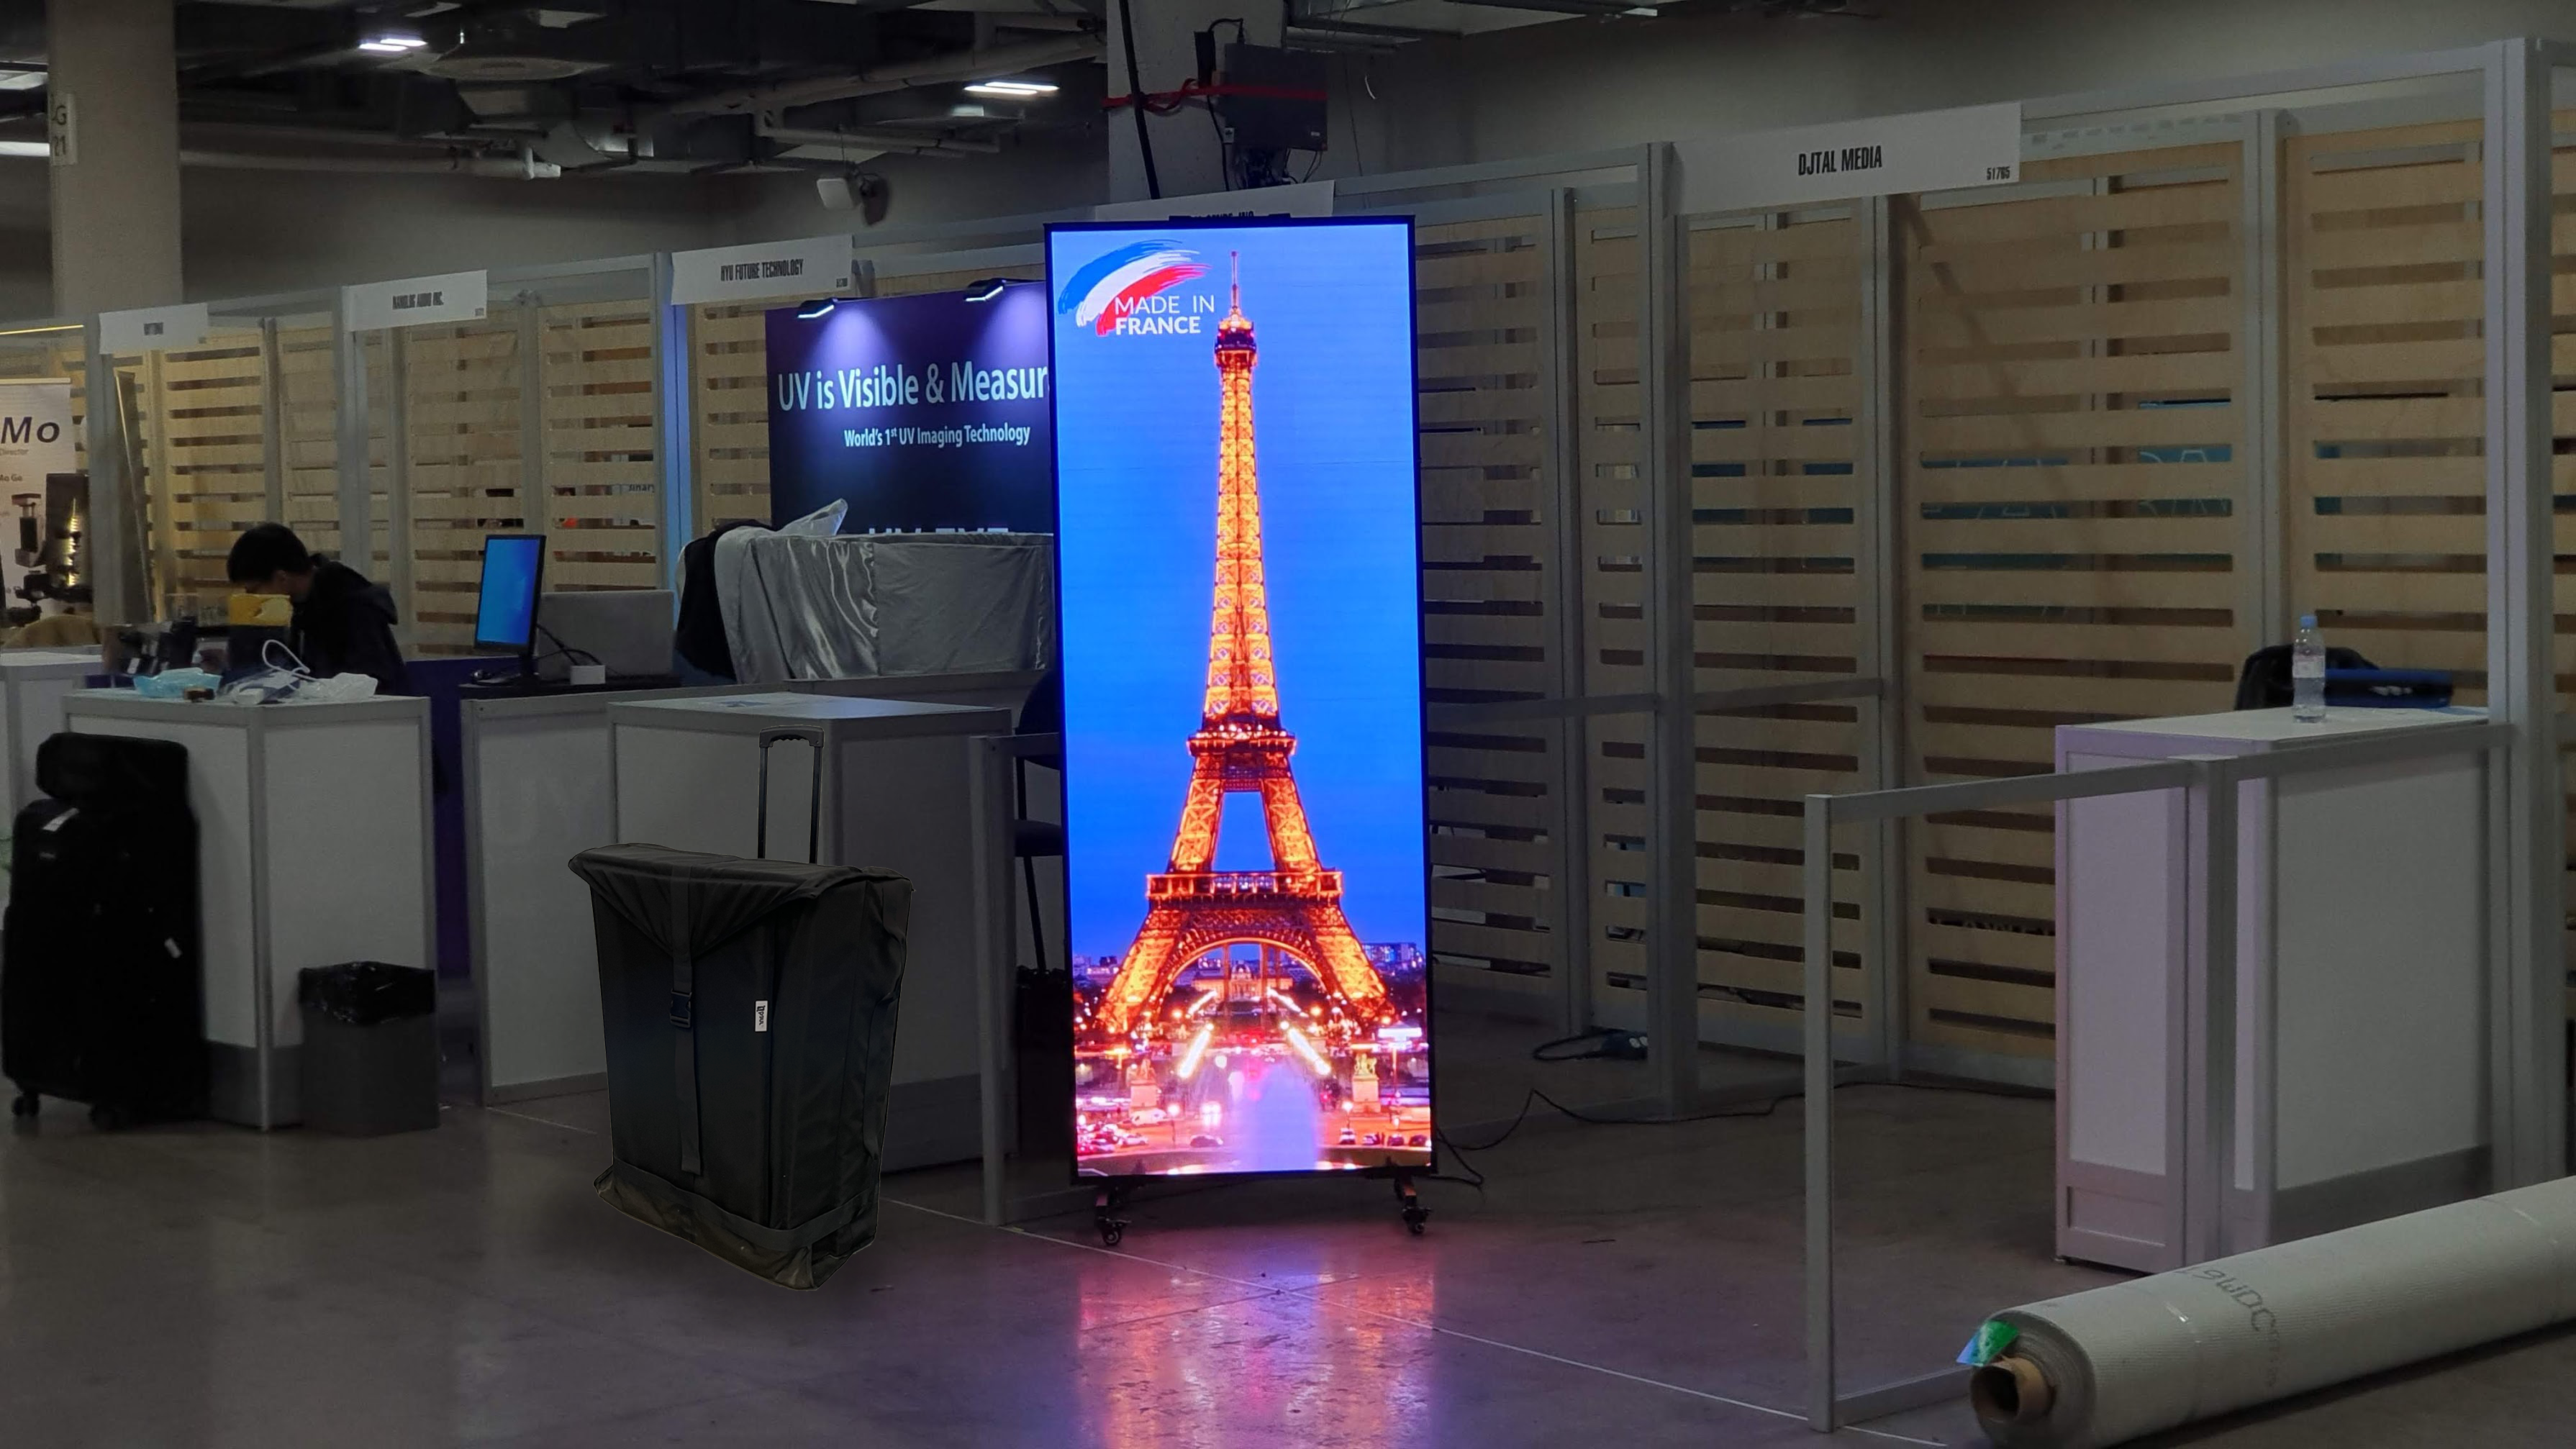 Ce boîtier TV Android cartonne sur AliExpress grâce à une promo de -75% -  Le Parisien